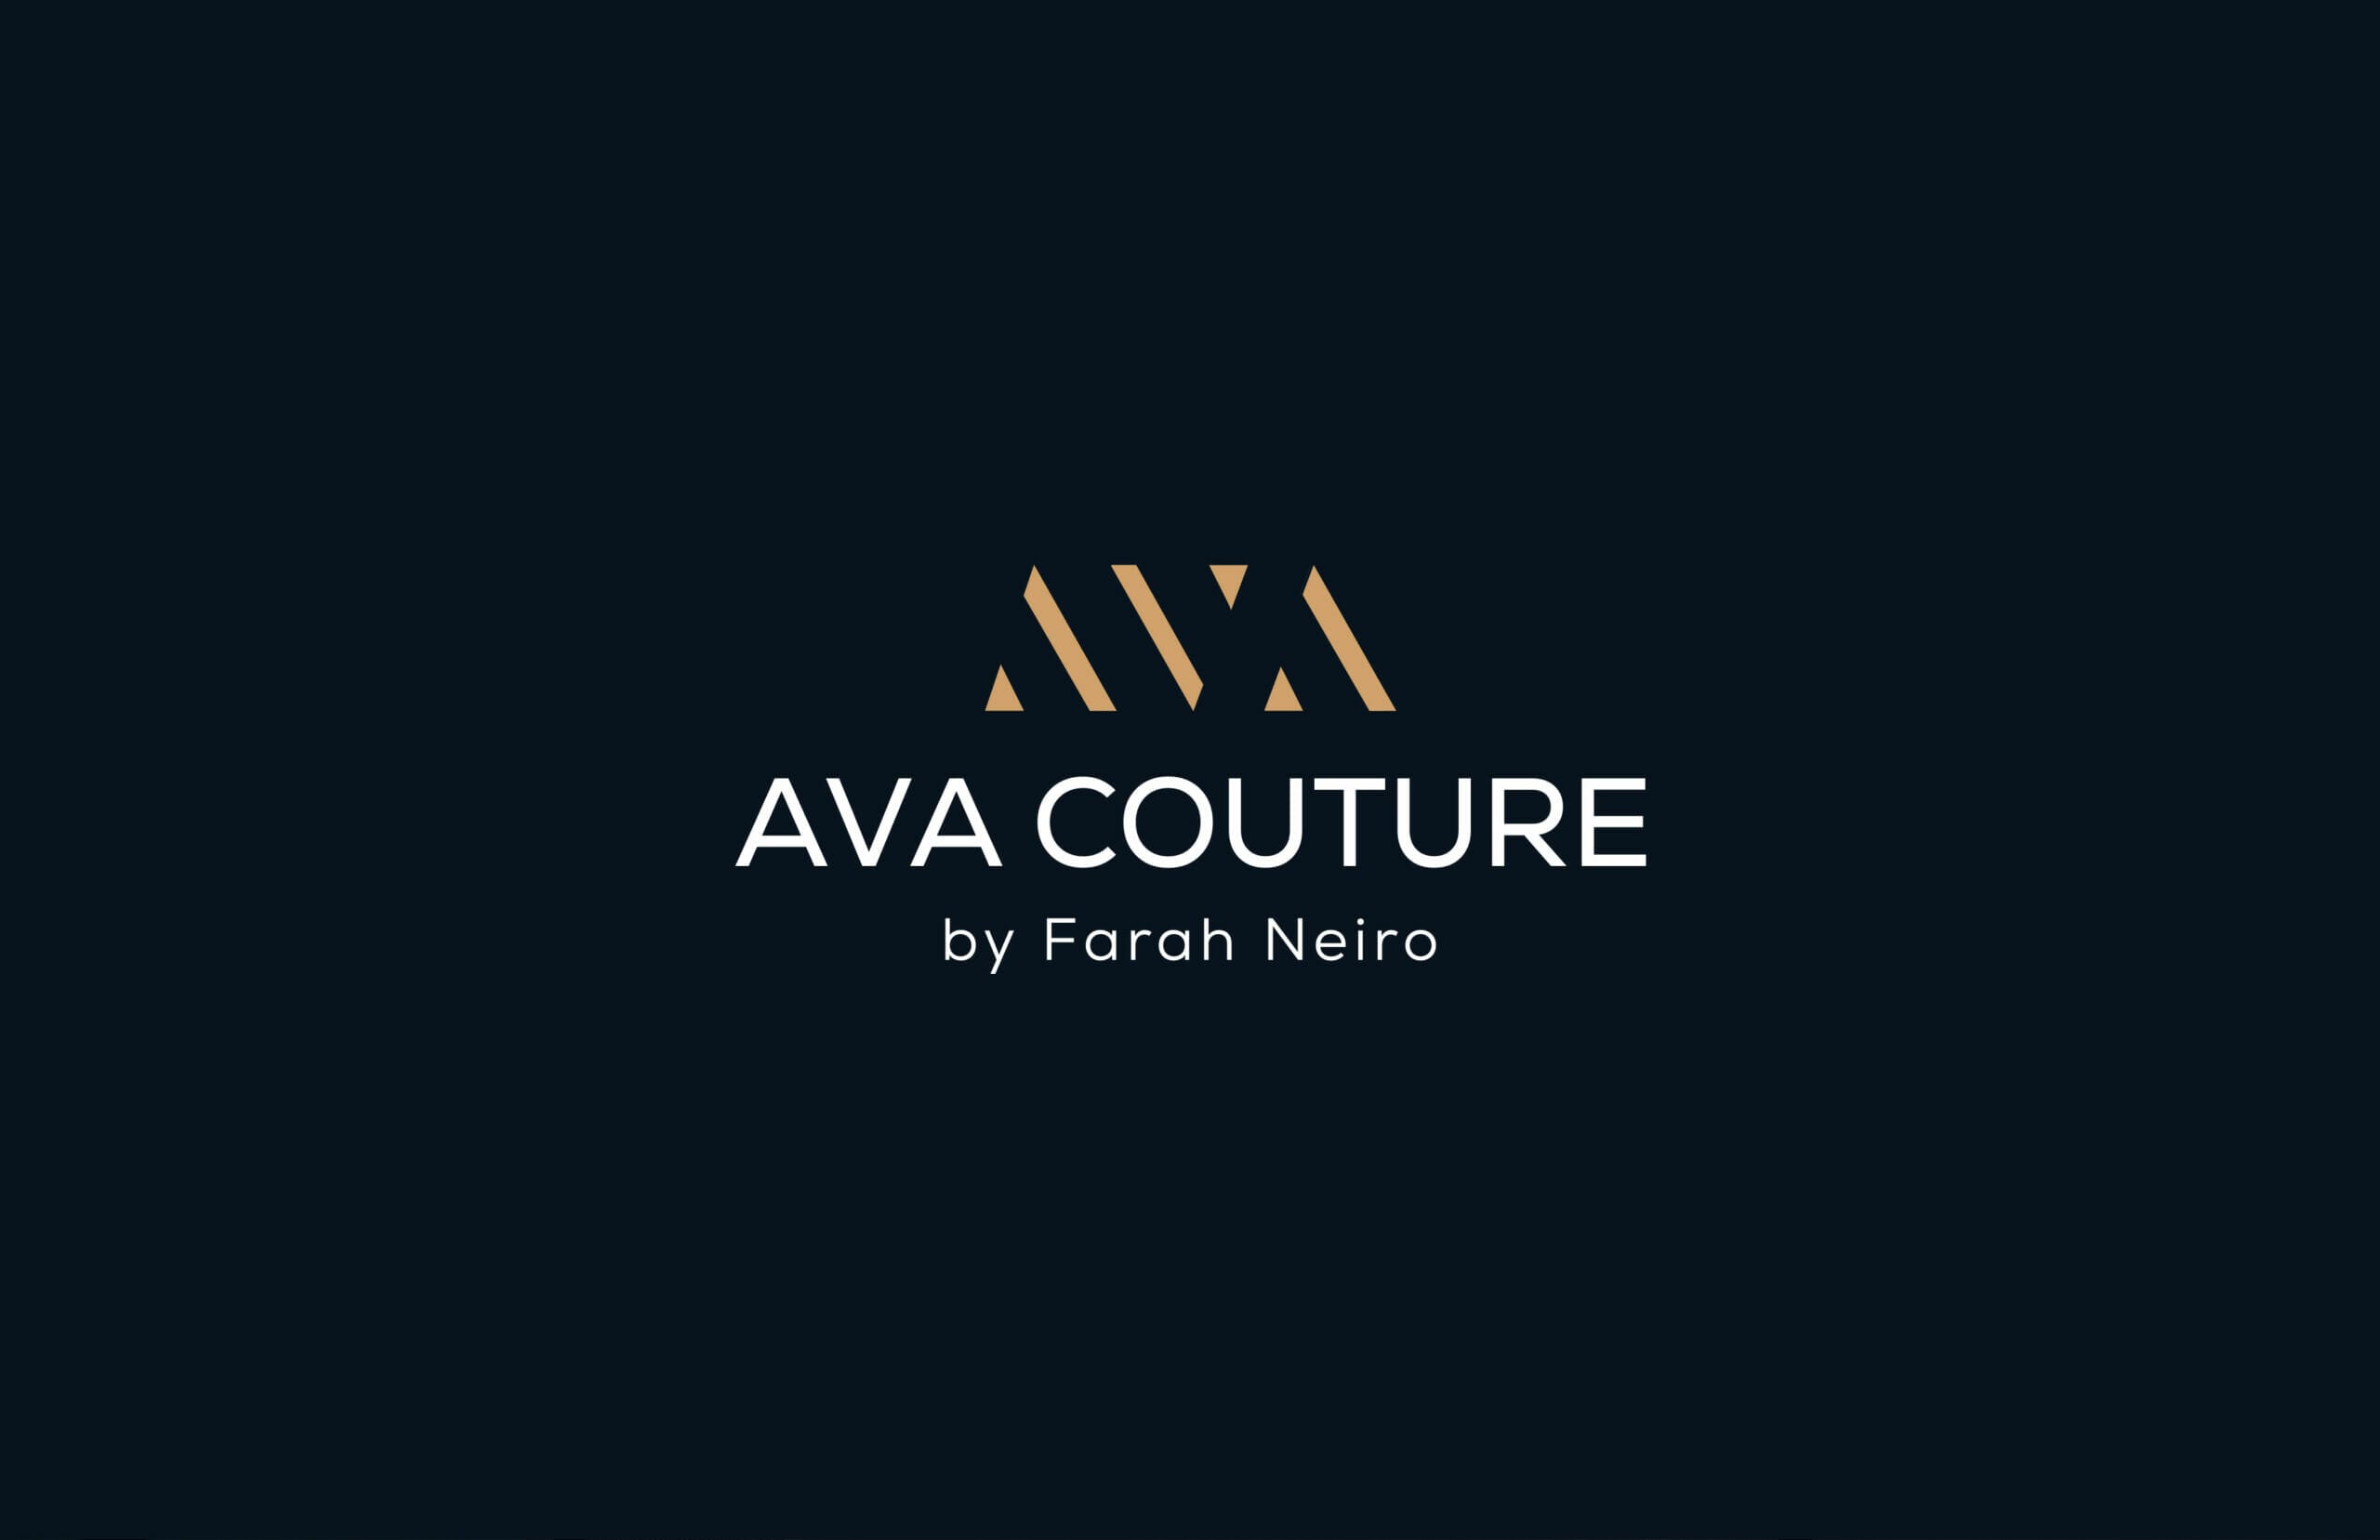 AVA-COUTURE Brand Identity Design